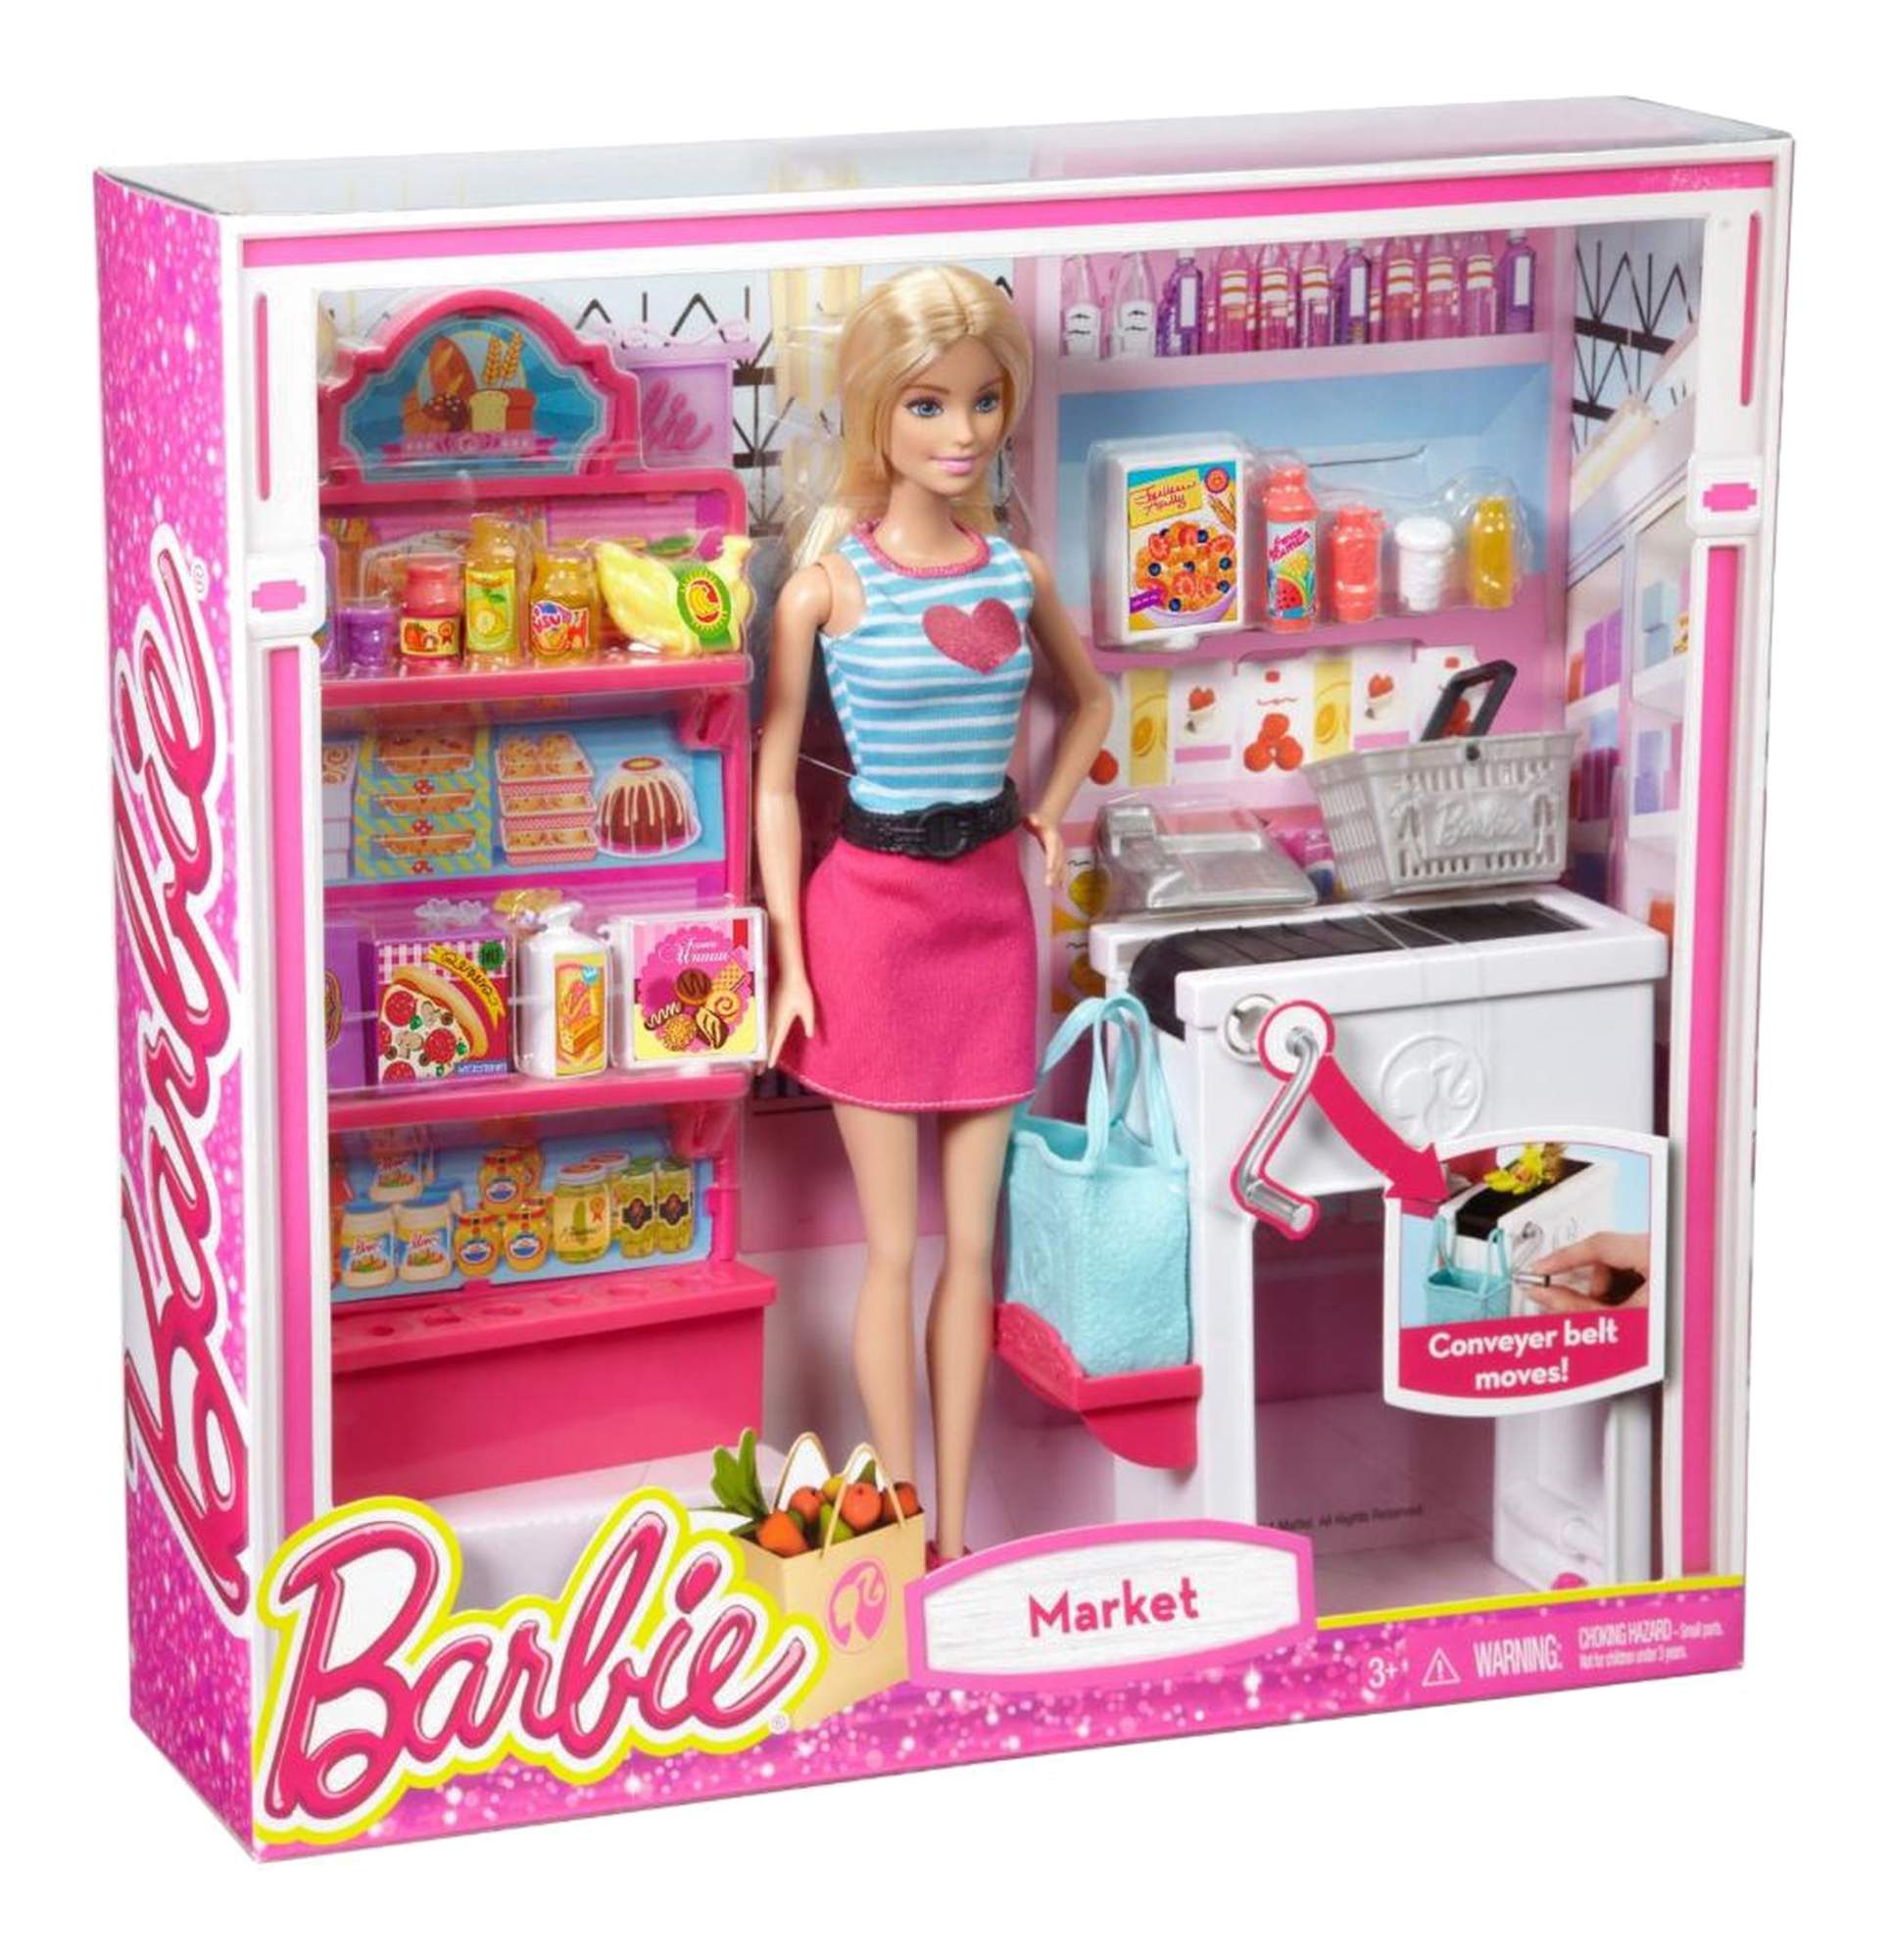 Игра купить куклу. Набор Barbie продуктовый магазин Малибу, 29 см, ckp77. Кукла Барби Mattel супермаркет.